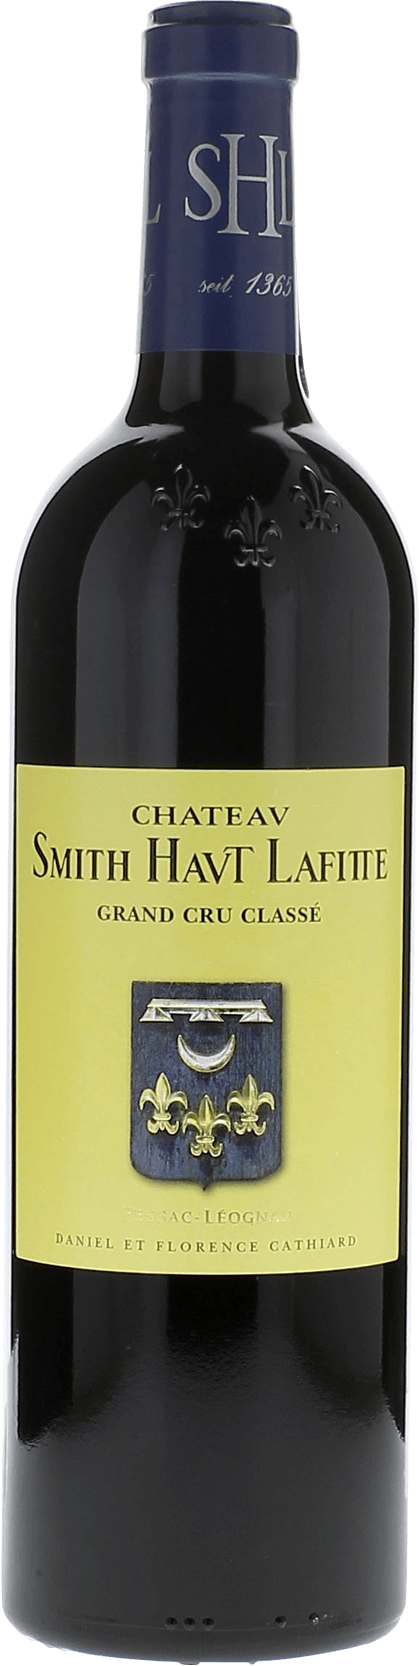 Smith haut lafitte 1998 Grand Cru Class Graves, Bordeaux rouge